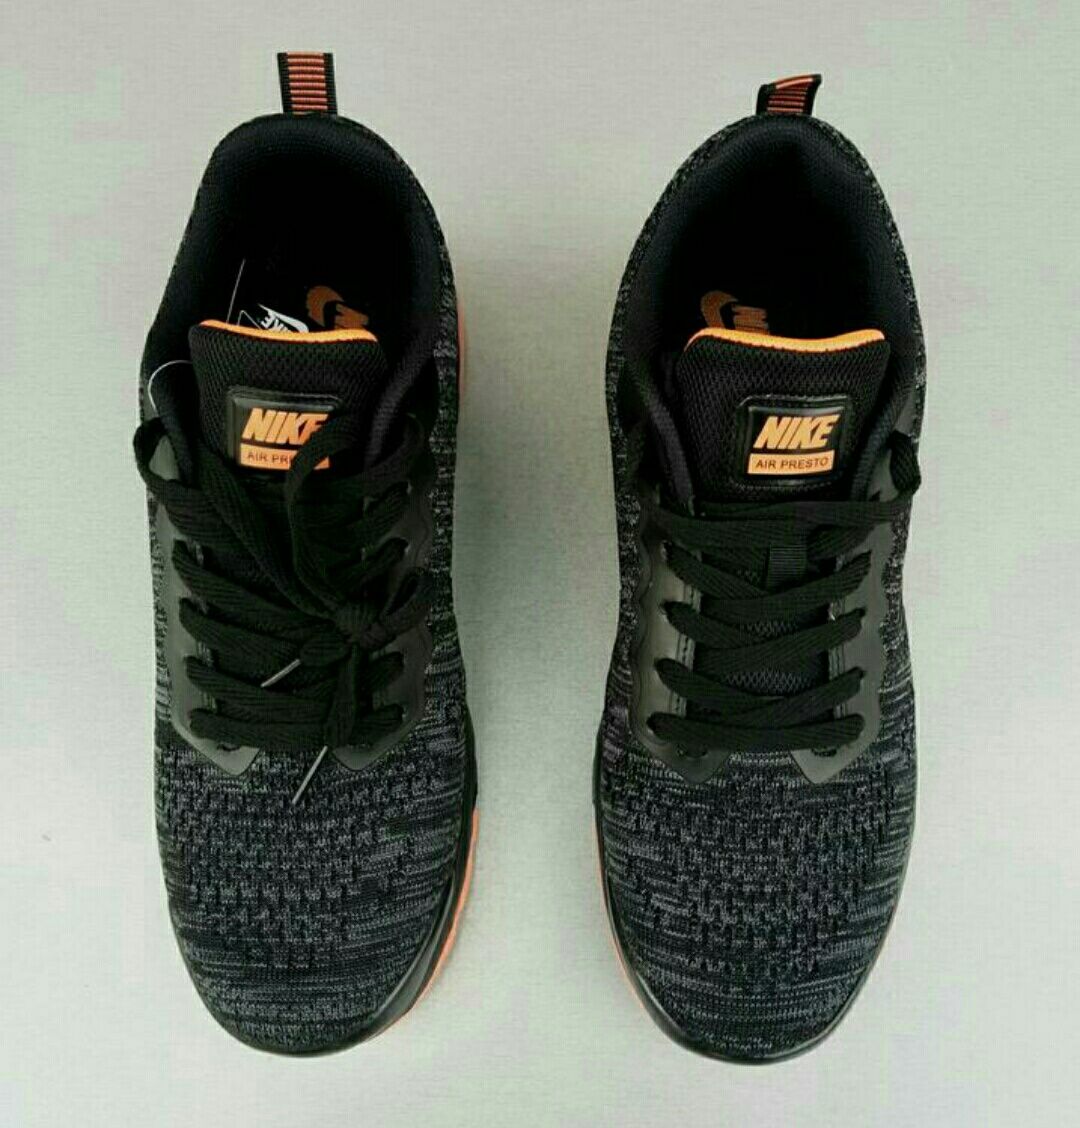 Nike Air Presto кроссовки мужские черные с оранжевым на баллонах